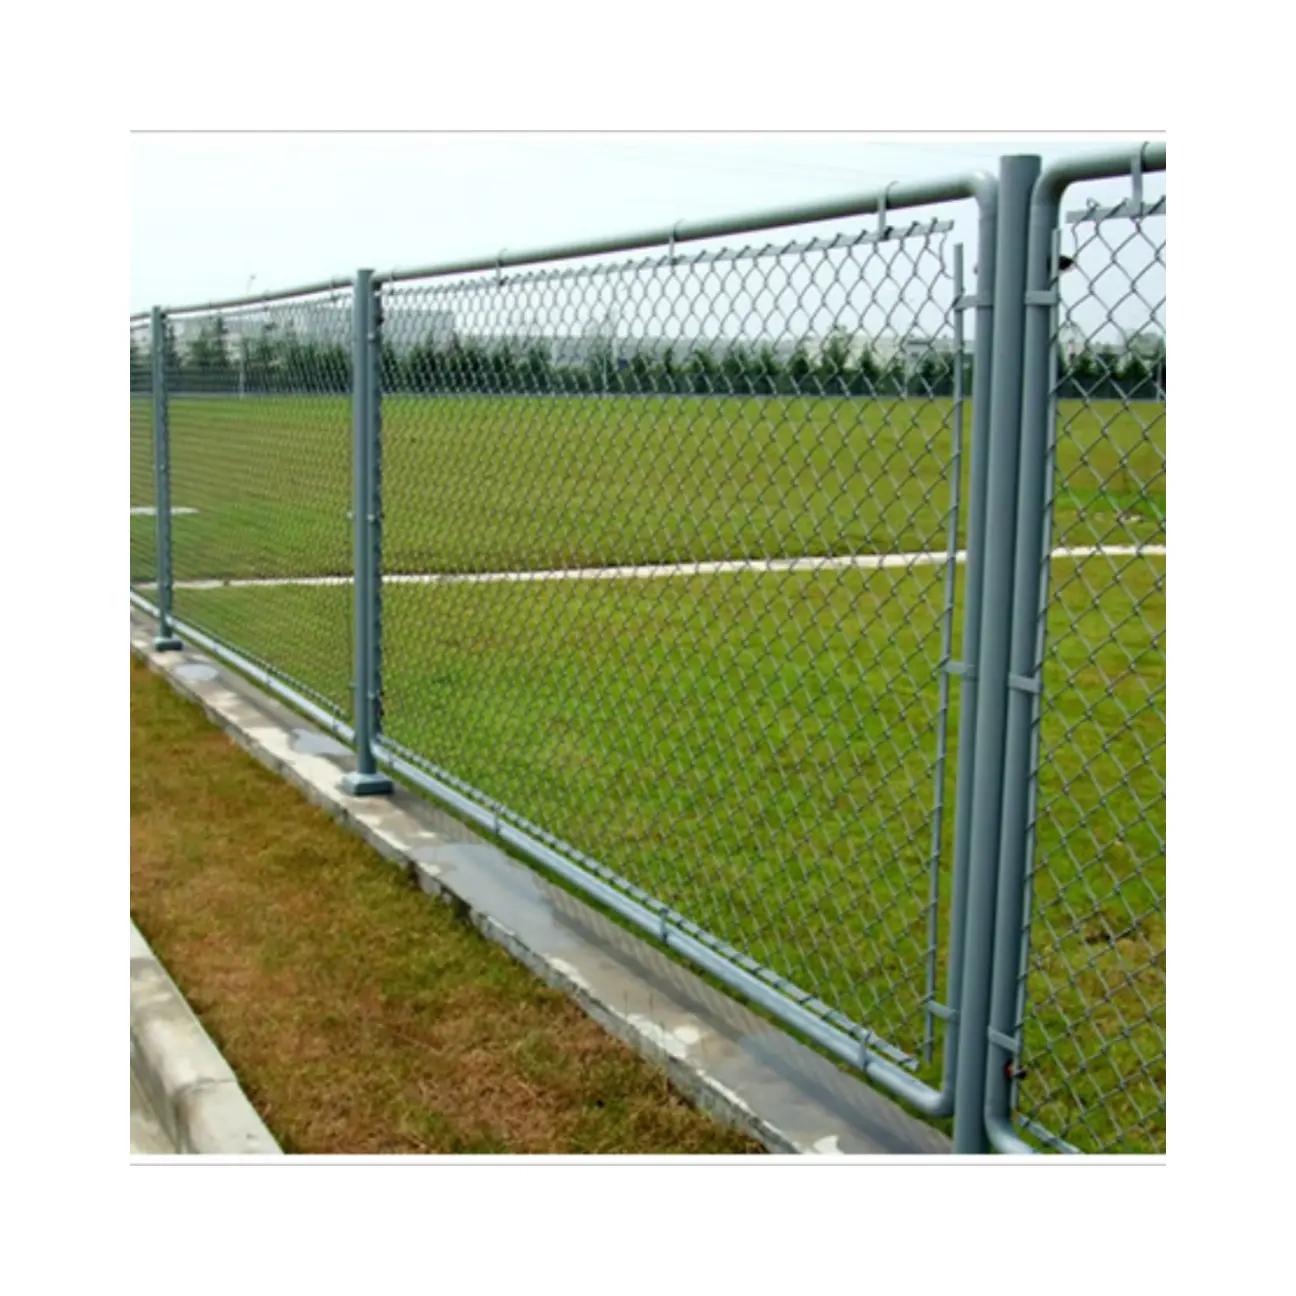 Vendita calda a buon mercato all'aperto recinzione facilmente assemblata zincata Standard australiana recinzione temporanea